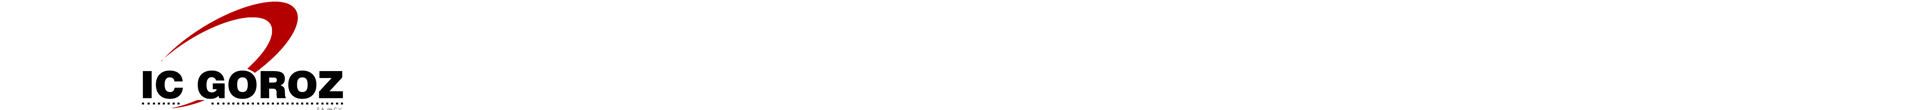 logo-icg-03-1